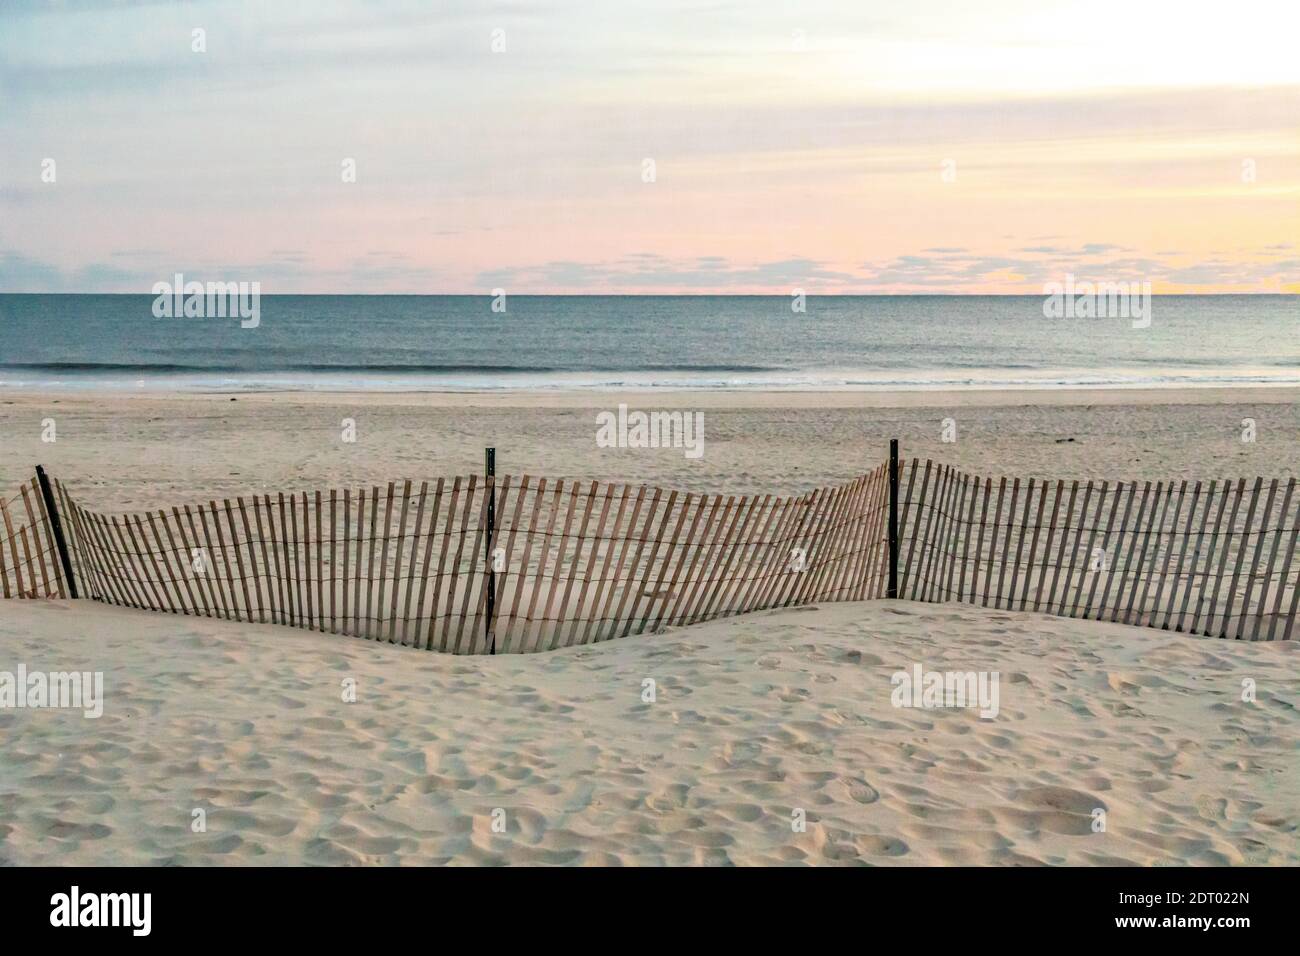 Paysage avec clôture de plage et l'océan Atlantique au-delà, Southampton, NY Banque D'Images